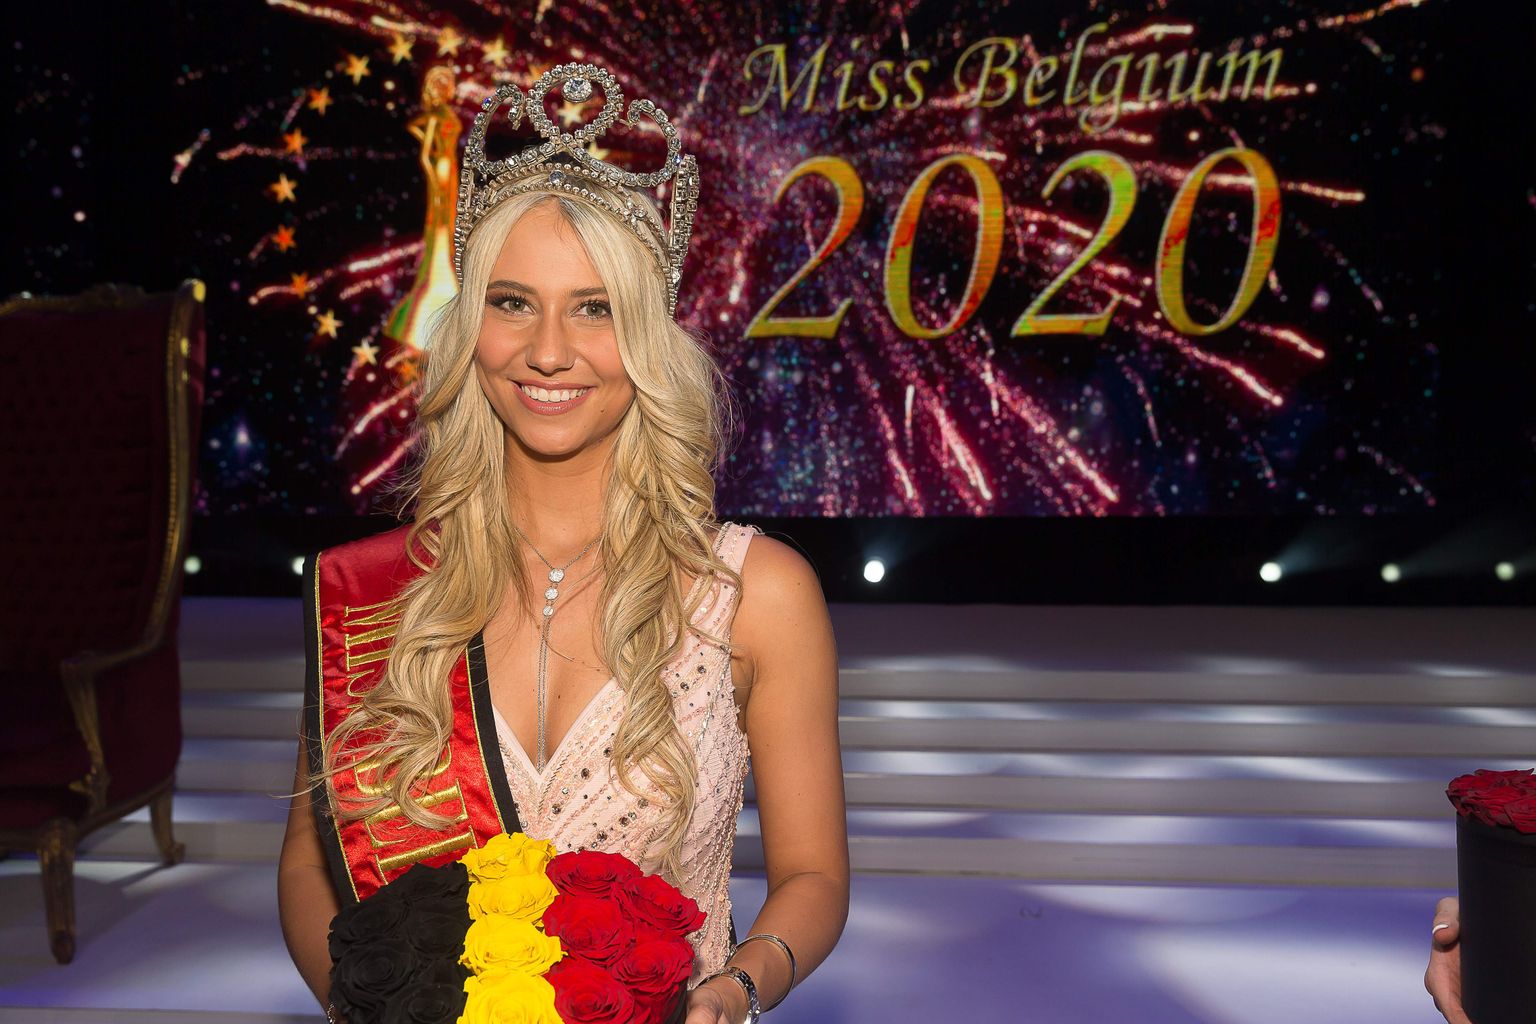 "Мисс Бельгия 2020"